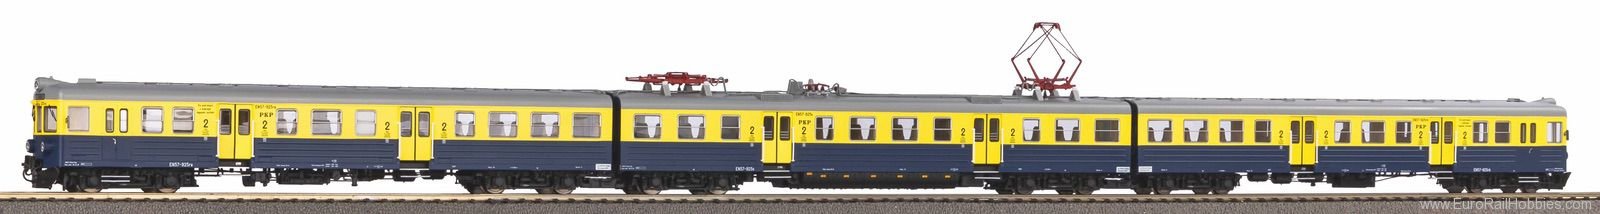 Piko 51453 Electric Railcar EN 57 PKP IV, 4tlg. (Marklin